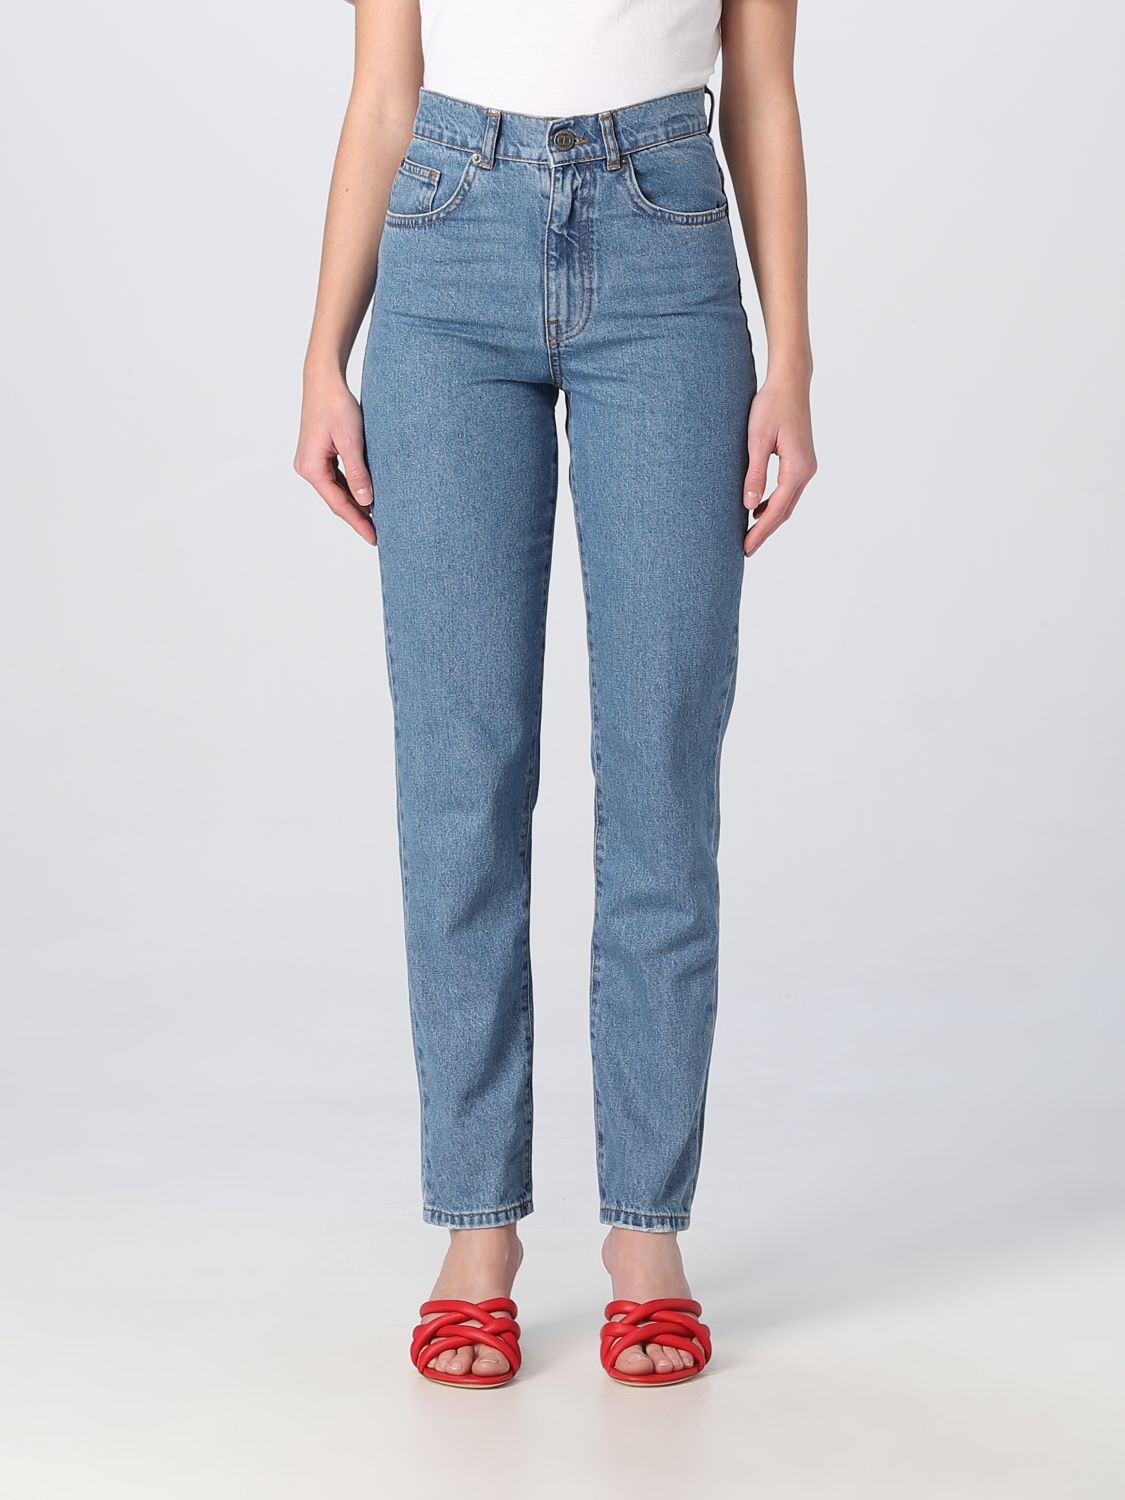 Twinset Jeans  Woman Colour Denim